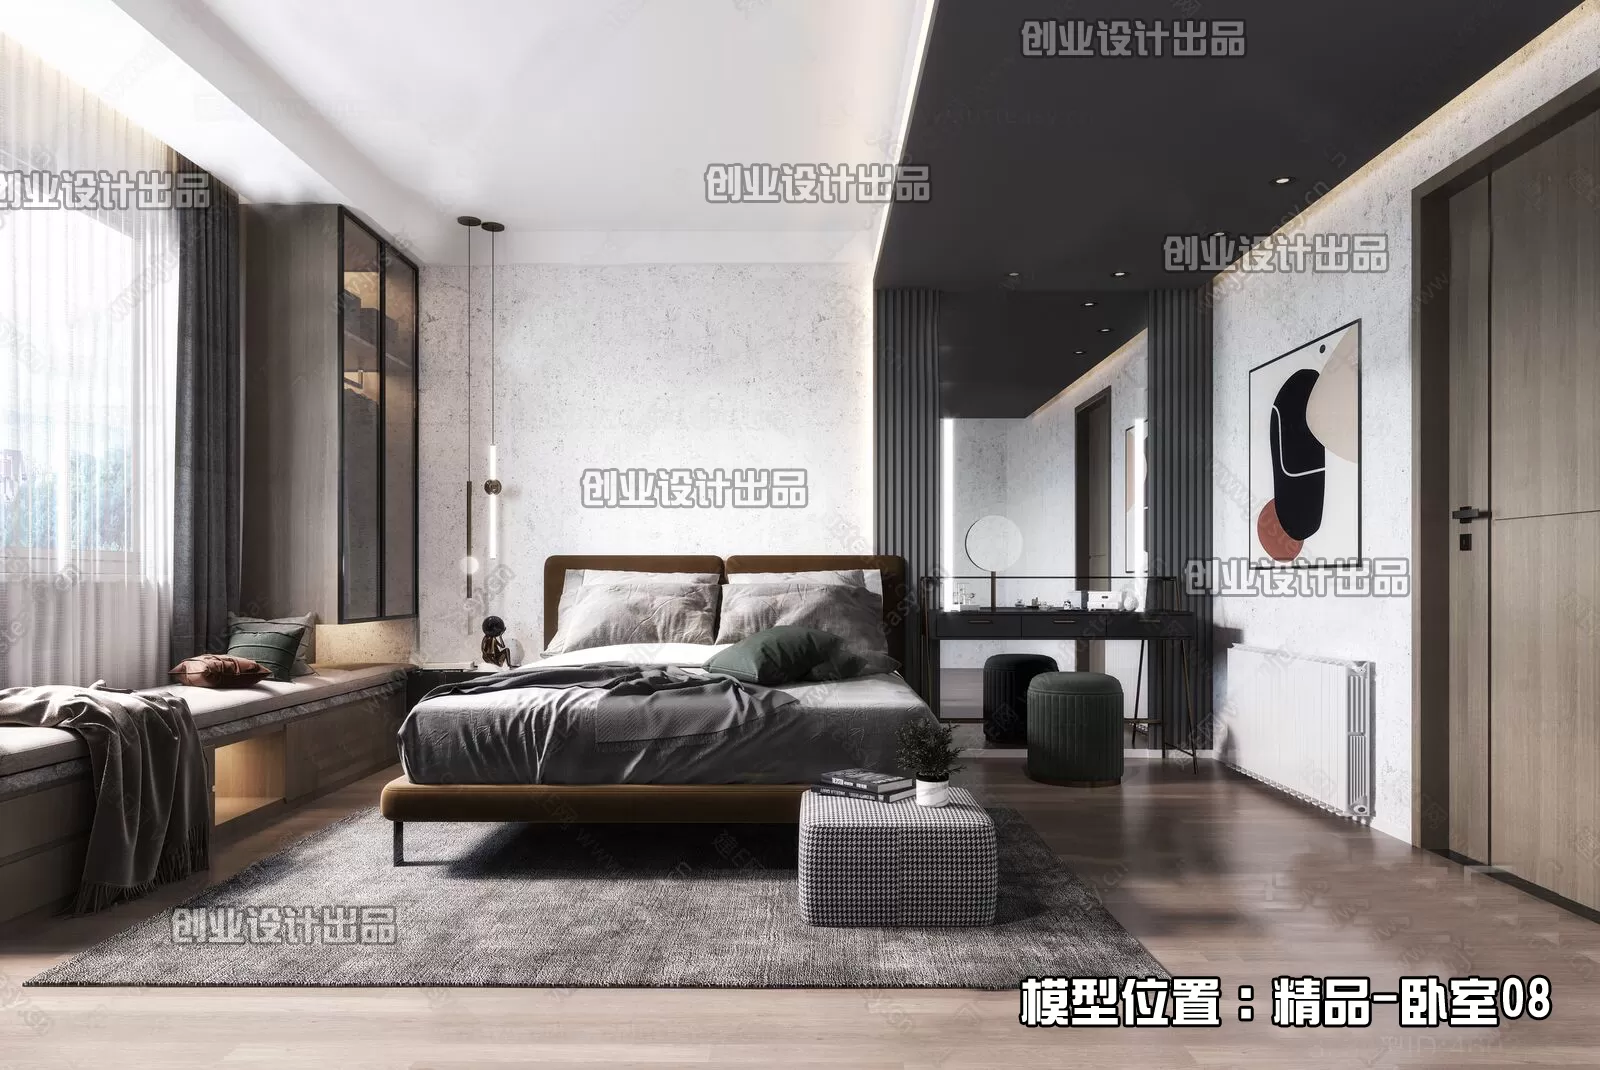 Bedroom – Modern Interior Design – 3D Models – 154